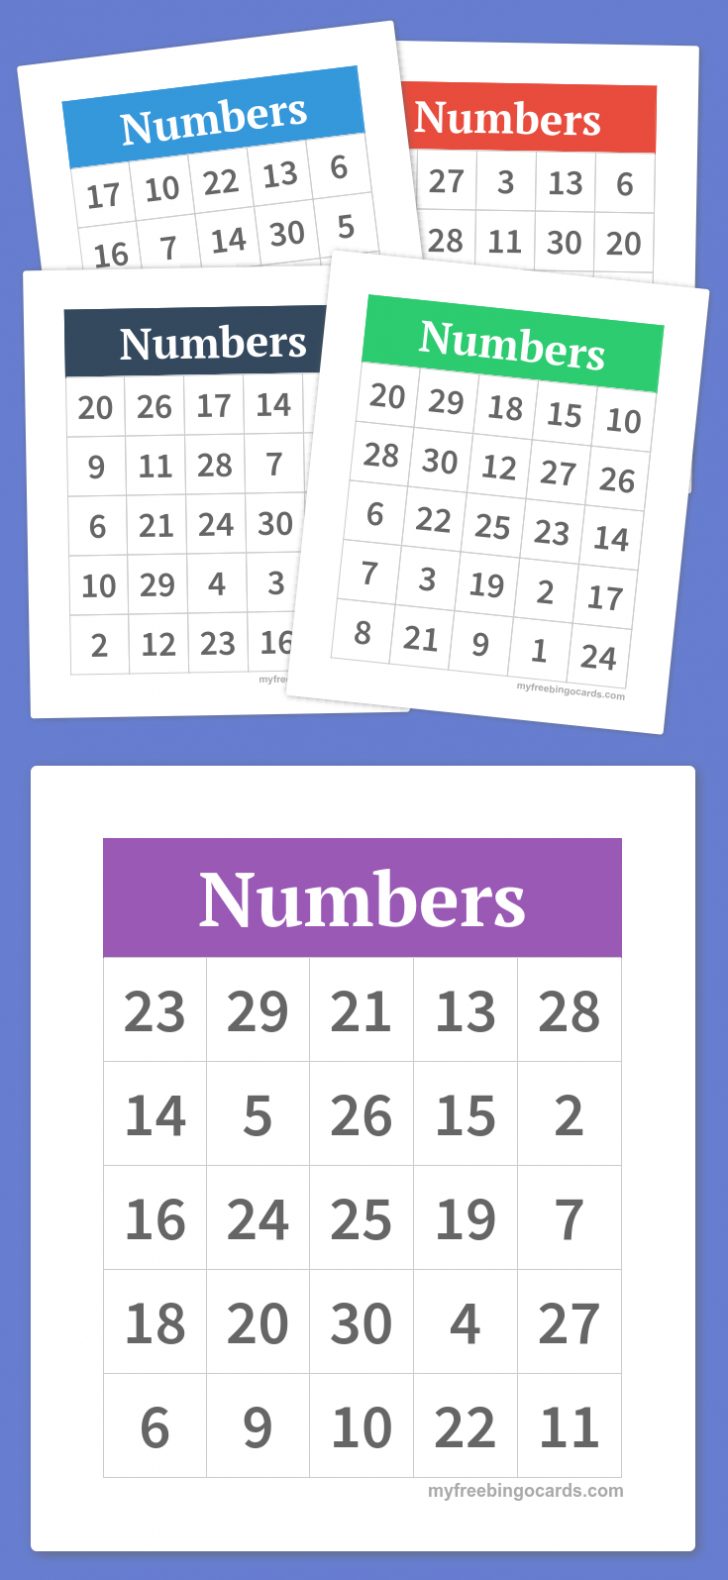 free-printable-bingo-cards-bingo-voor-kinderen-printable-bingo-cards